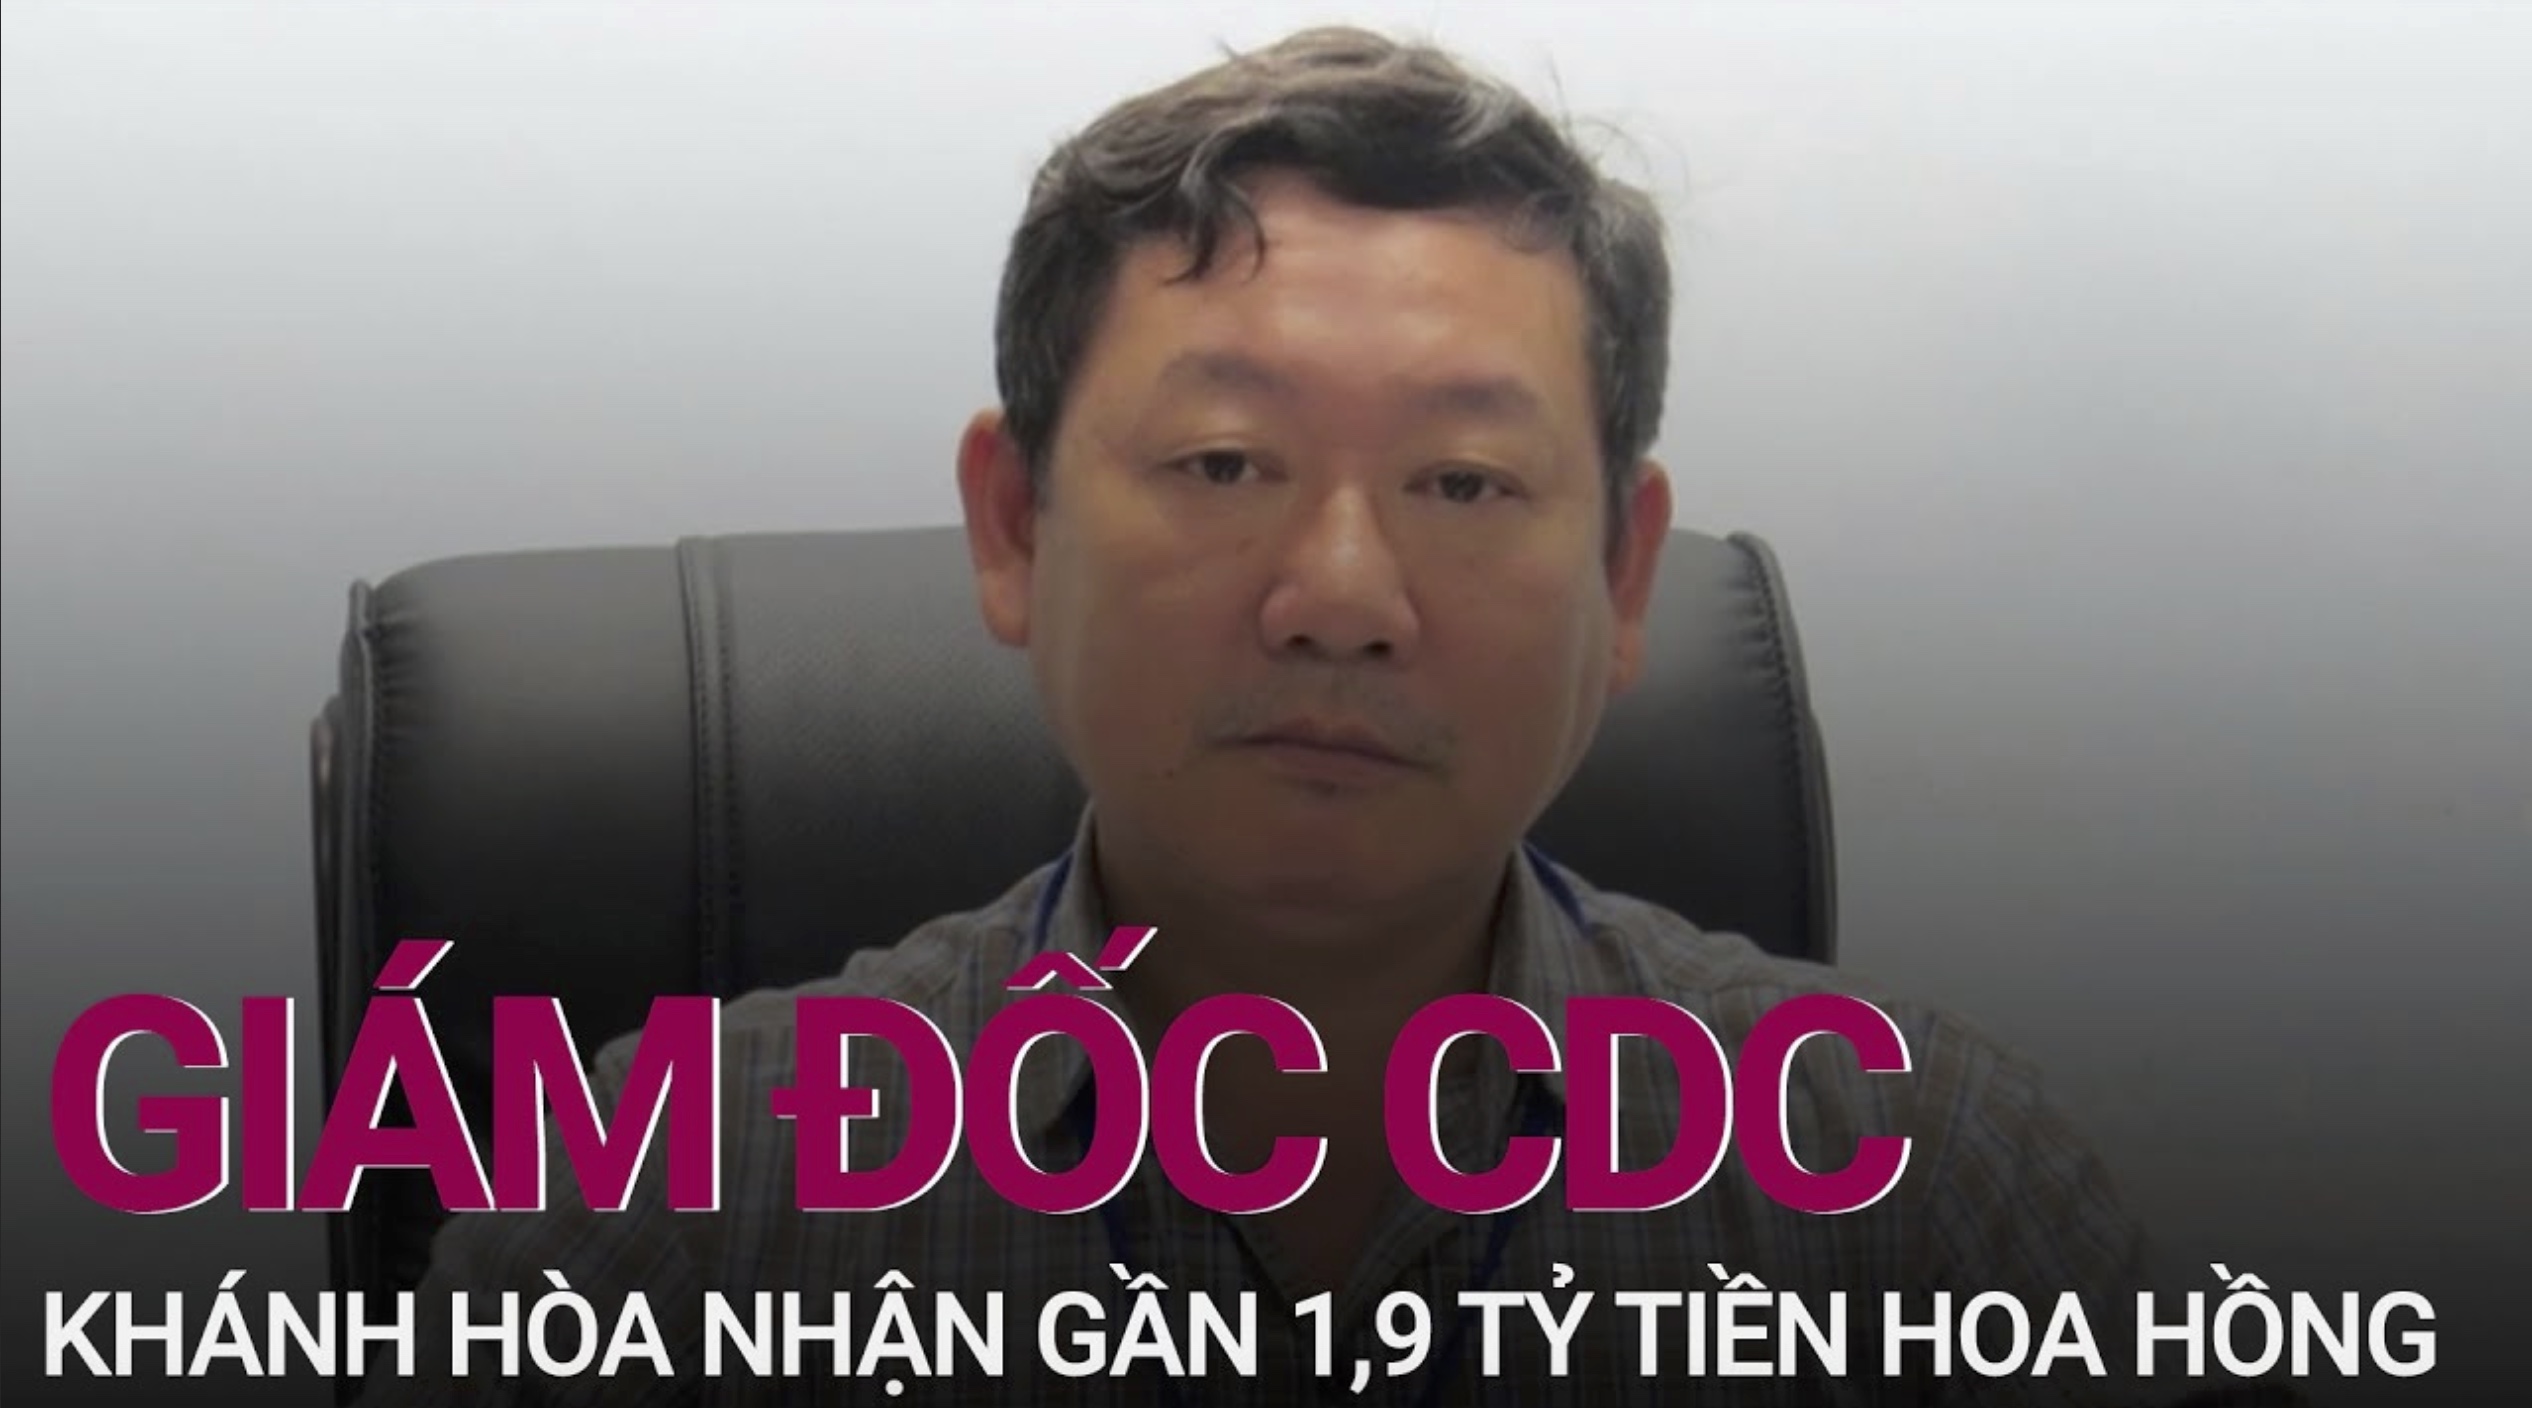 Giám đốc CDC Khánh Hoà nhận 1,9 tỷ đồng tiền hoa hồng